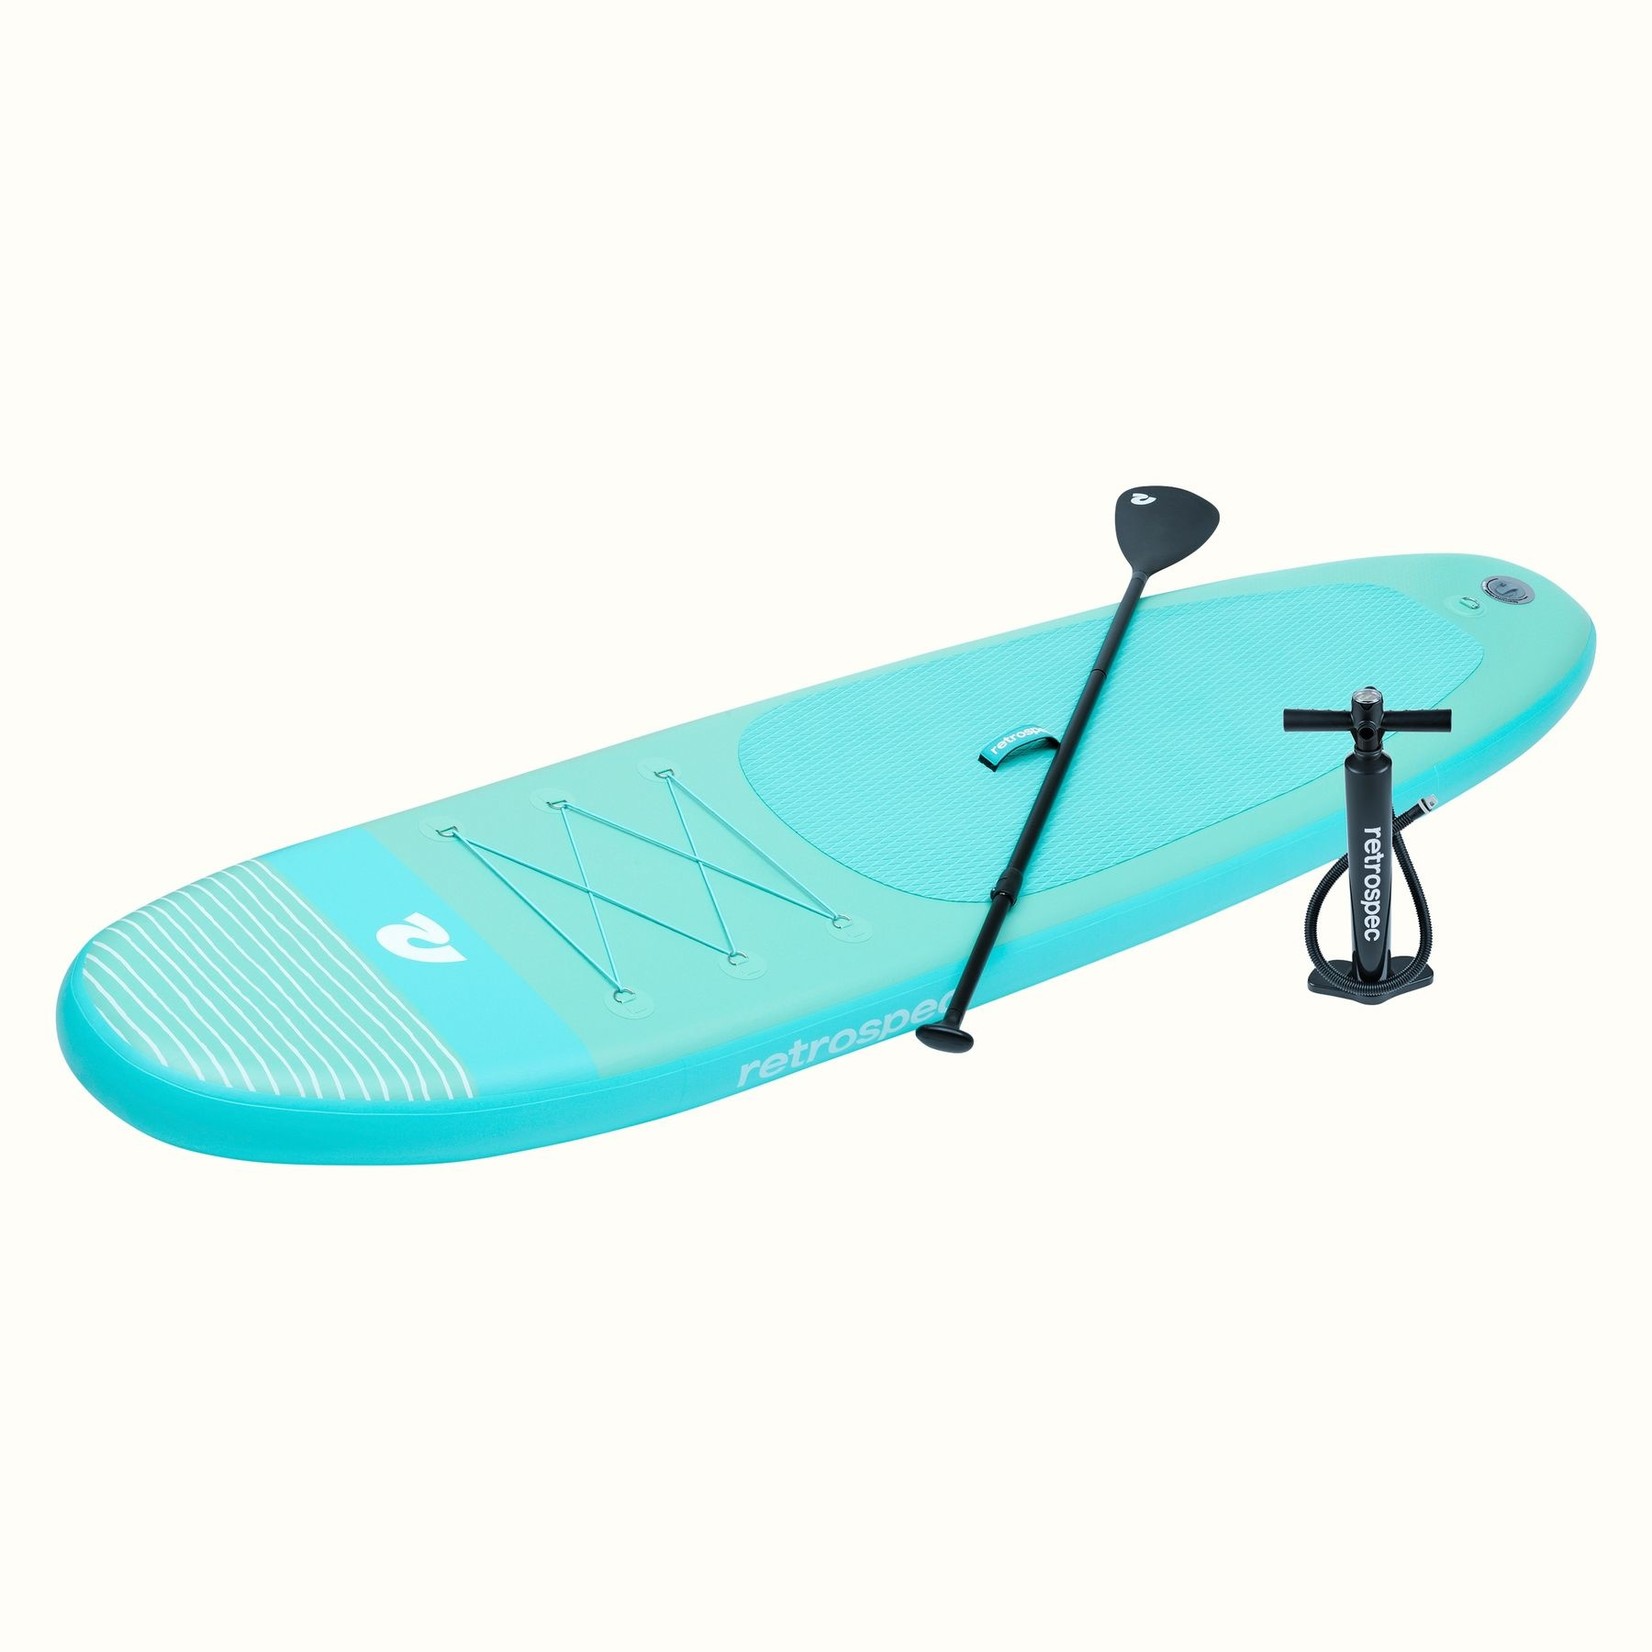 Retrospec Weekender Inflatable Paddleboard 10'